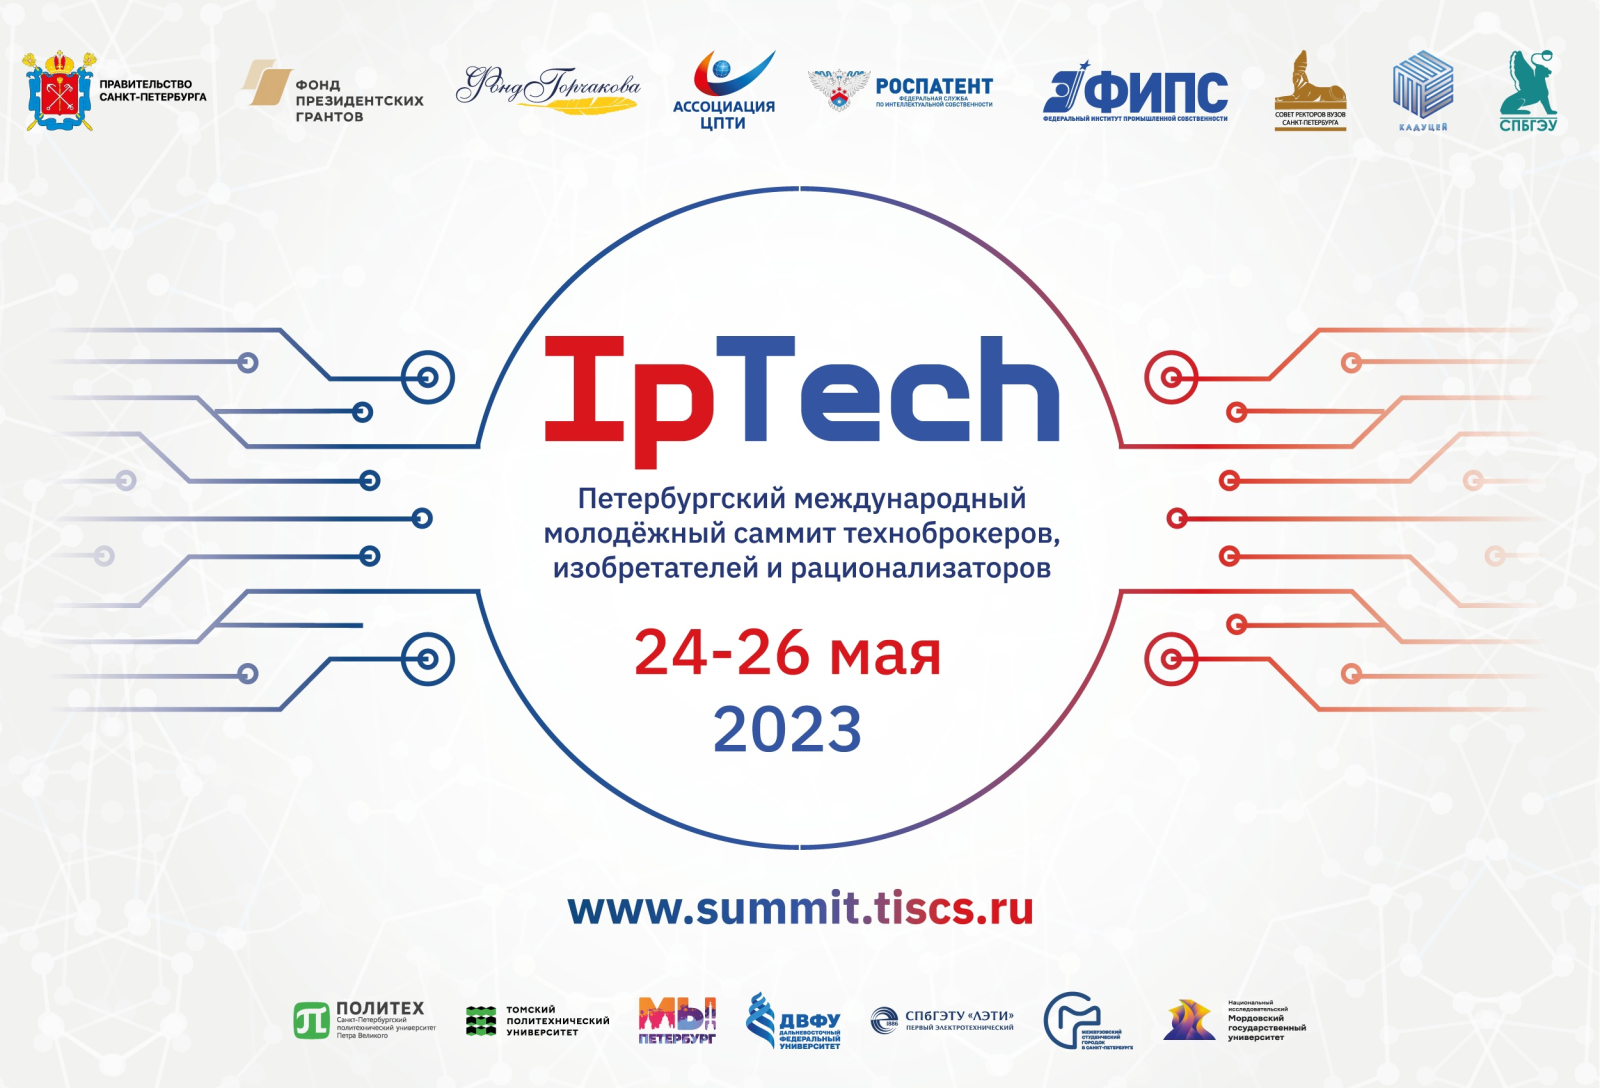 Петербургский международный саммит IpTech